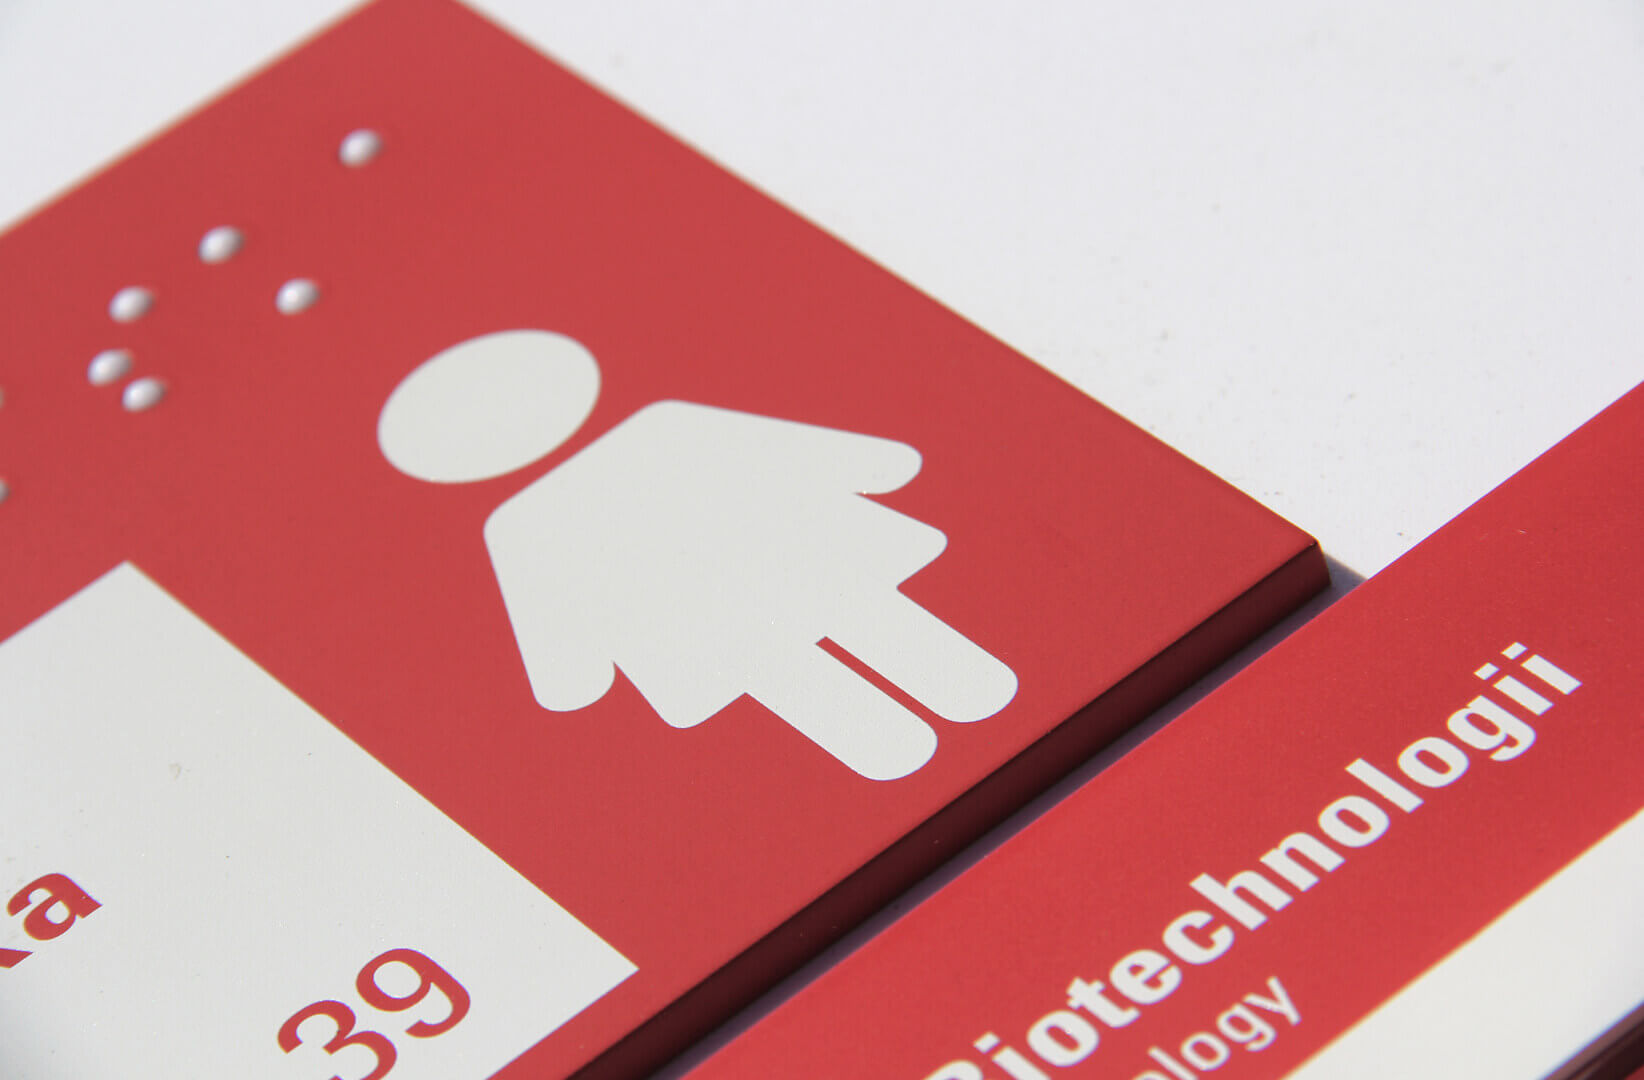 Placa informativa - Placa en braille, señalización universitaria, en rojo y blanco.